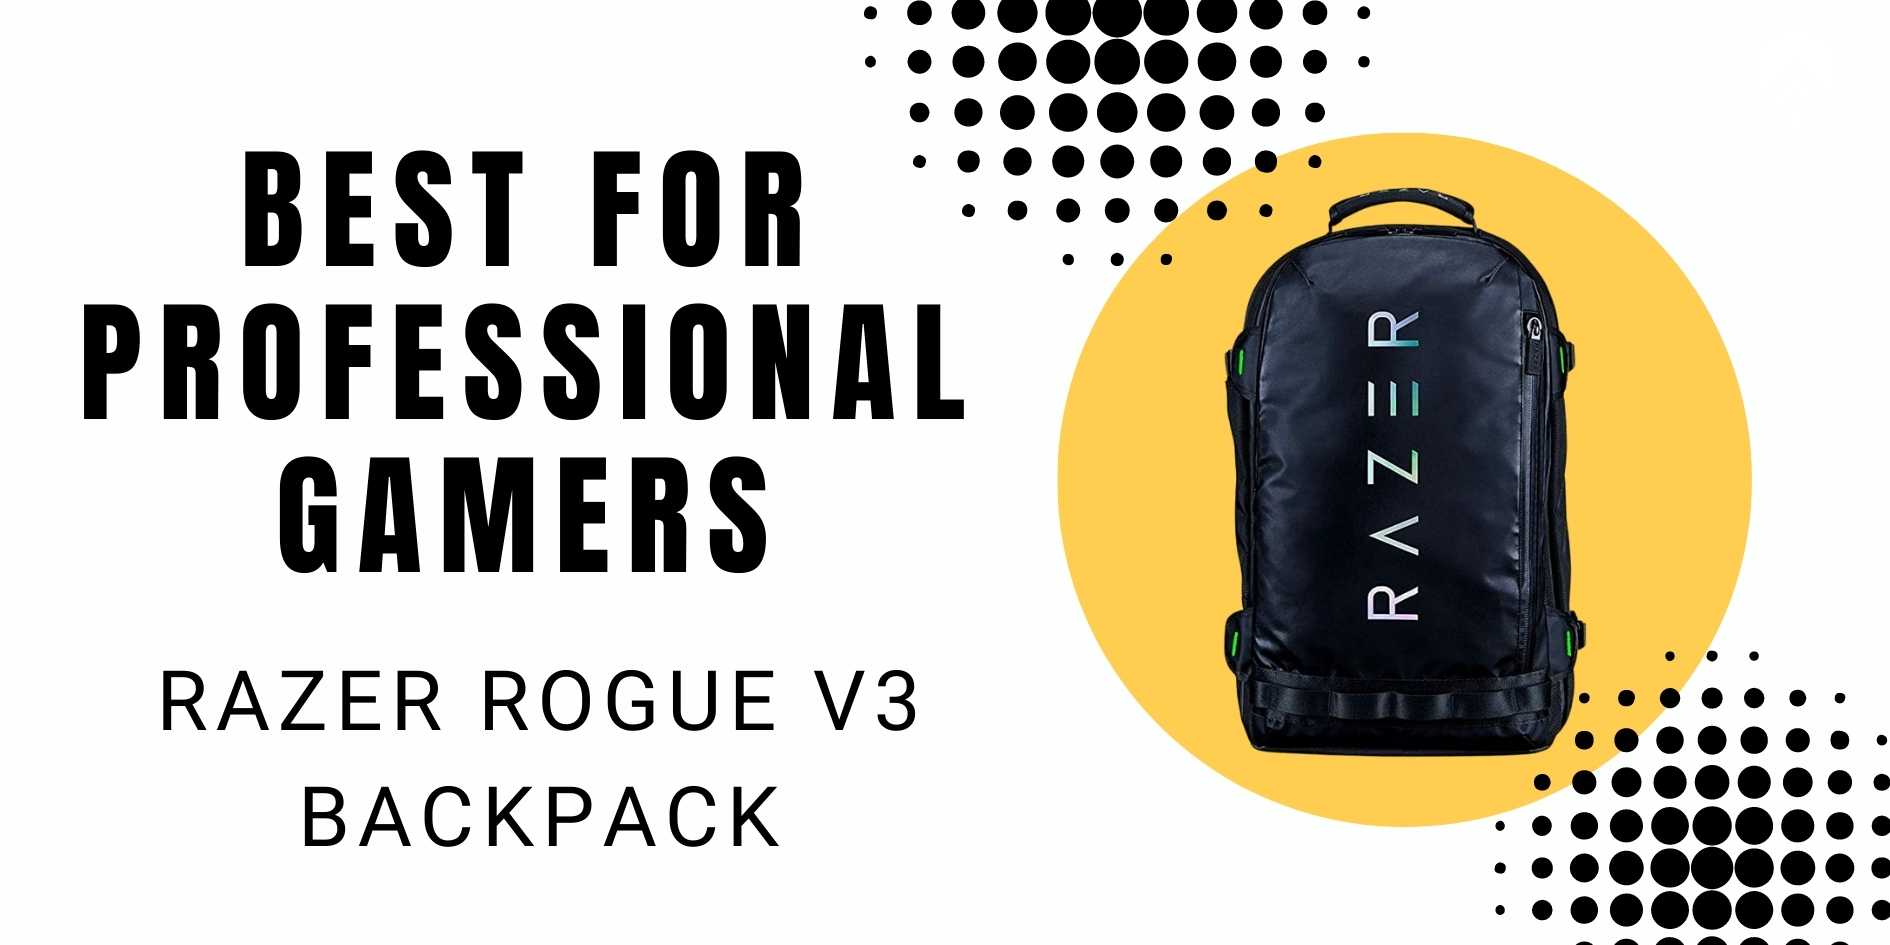 Razer Rogue V3 Backpack